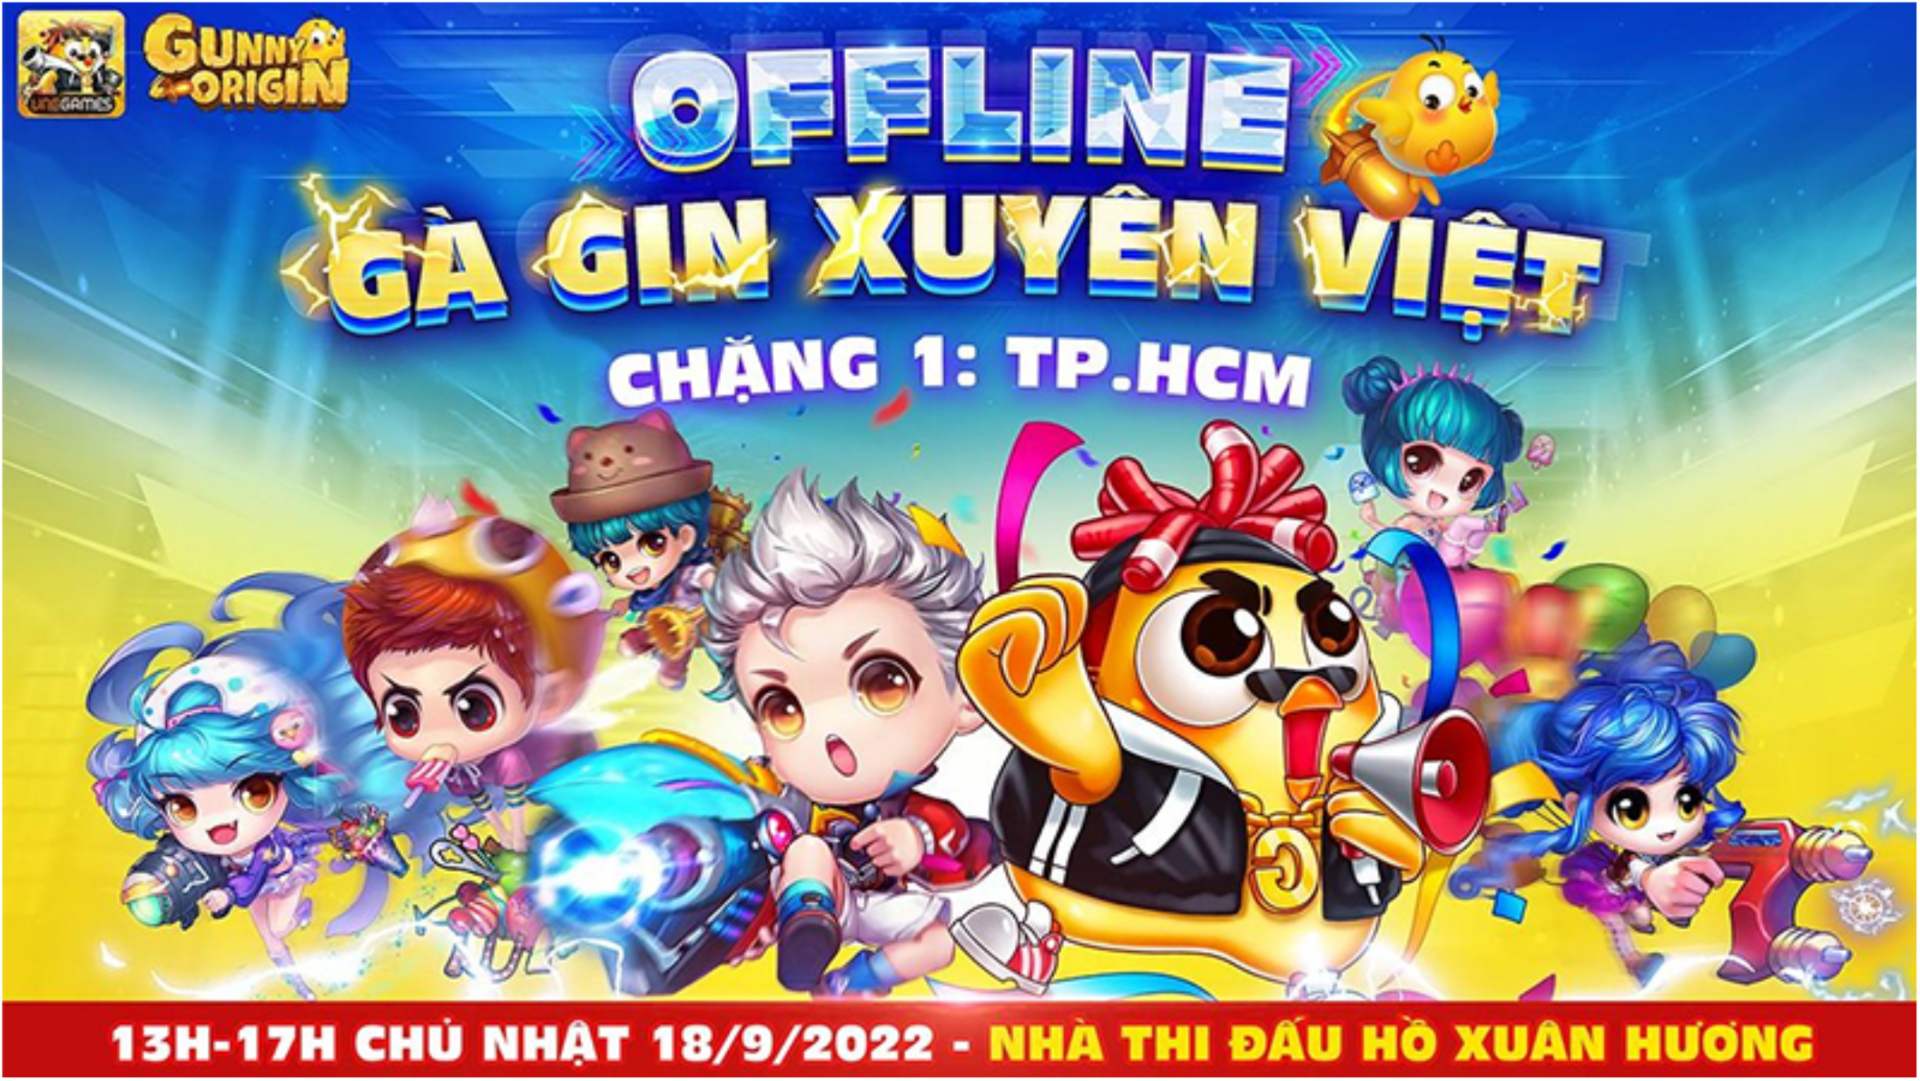 Offline Gà Gin xuyên Việt – Vào cửa miễn phí, nhận quà thả ga